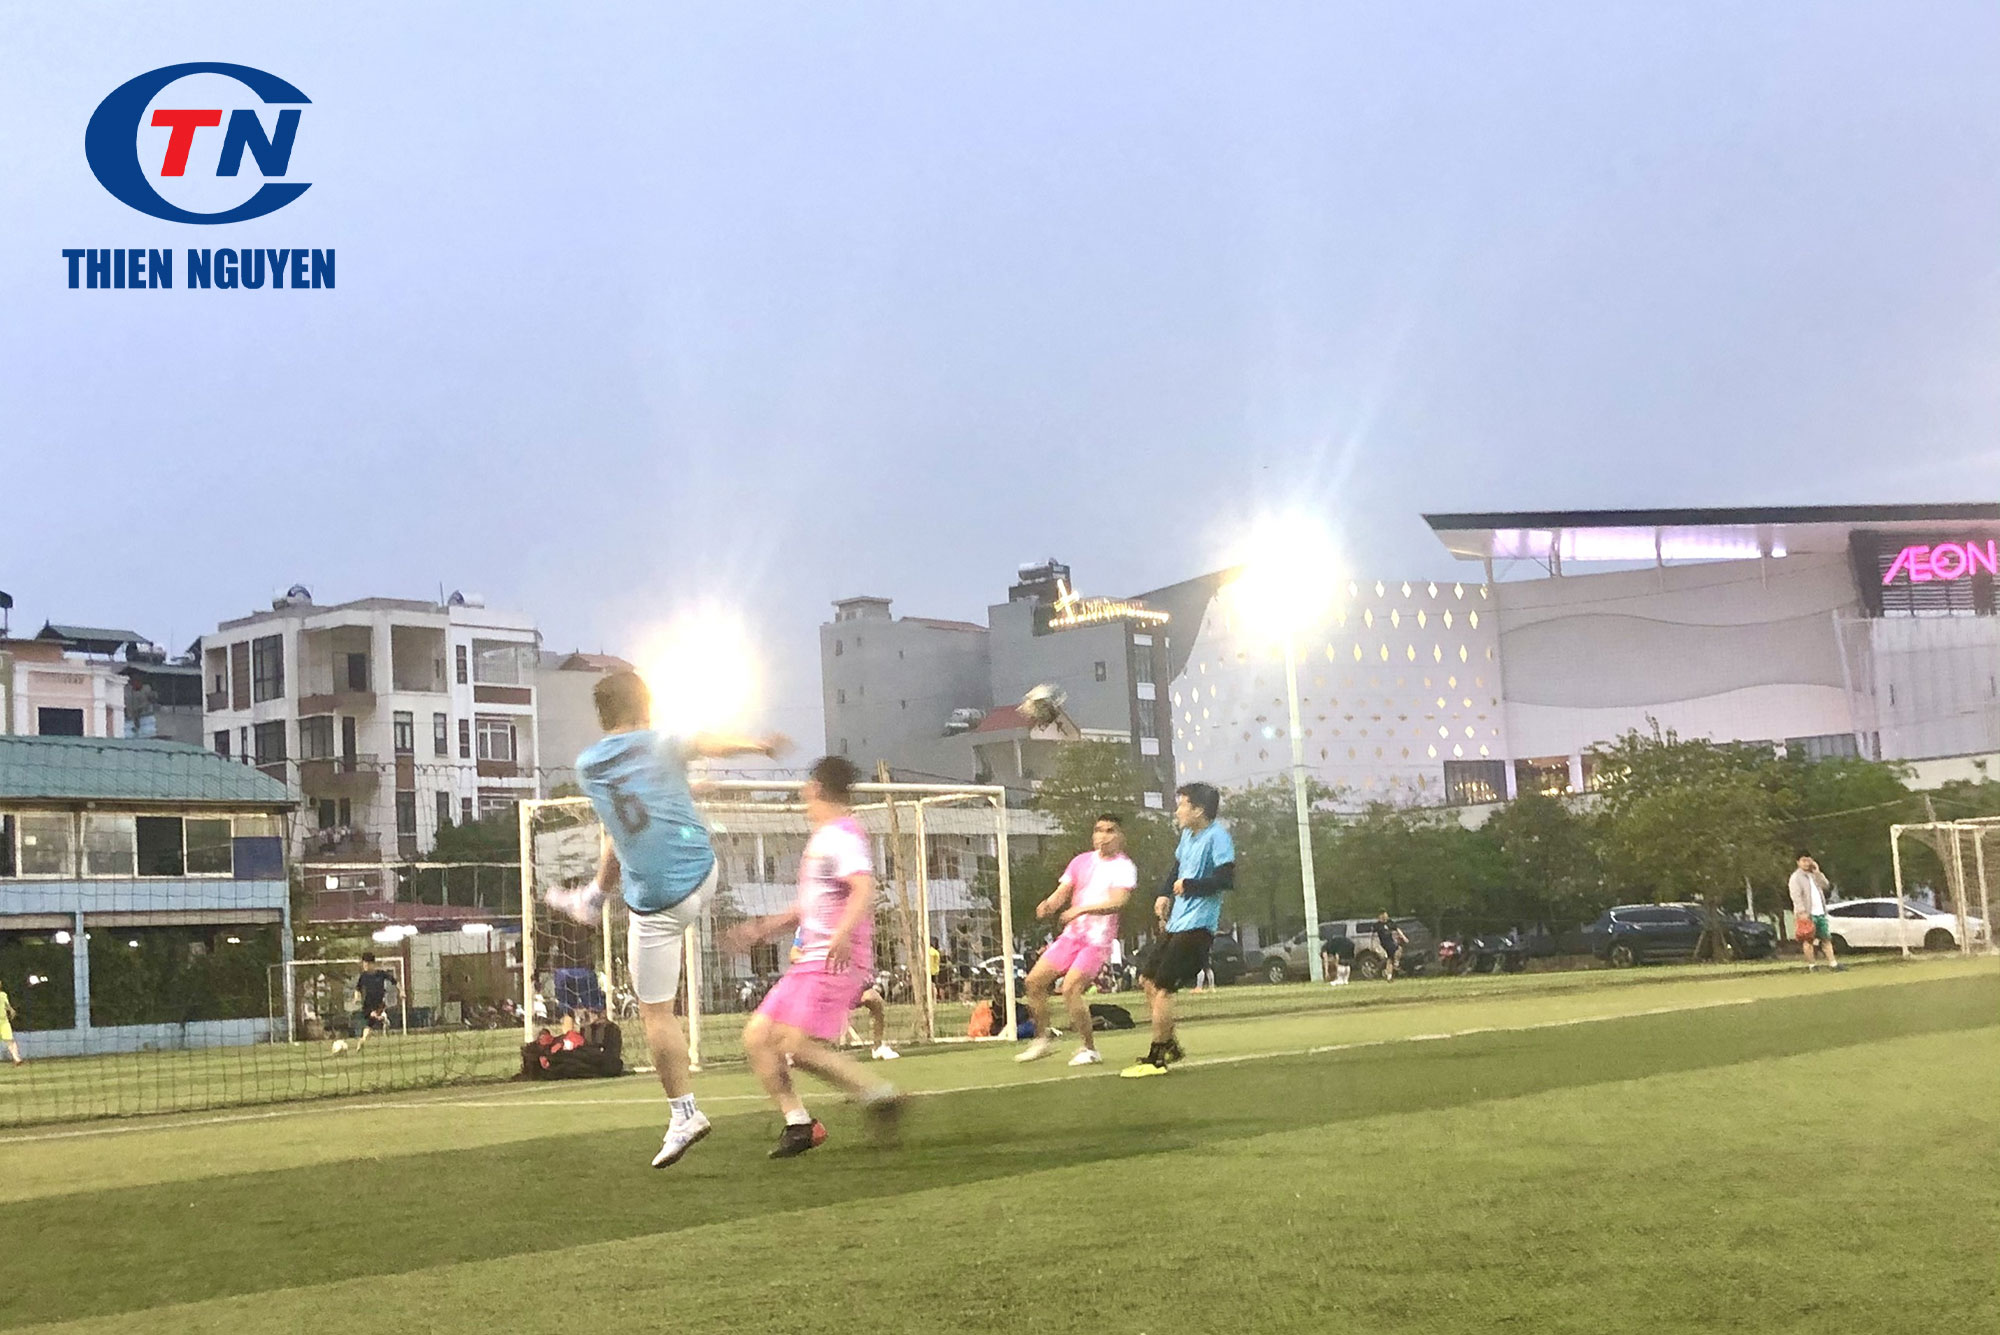 Giao hữu bóng đá Thiên Nguyên - Triệu Sơn